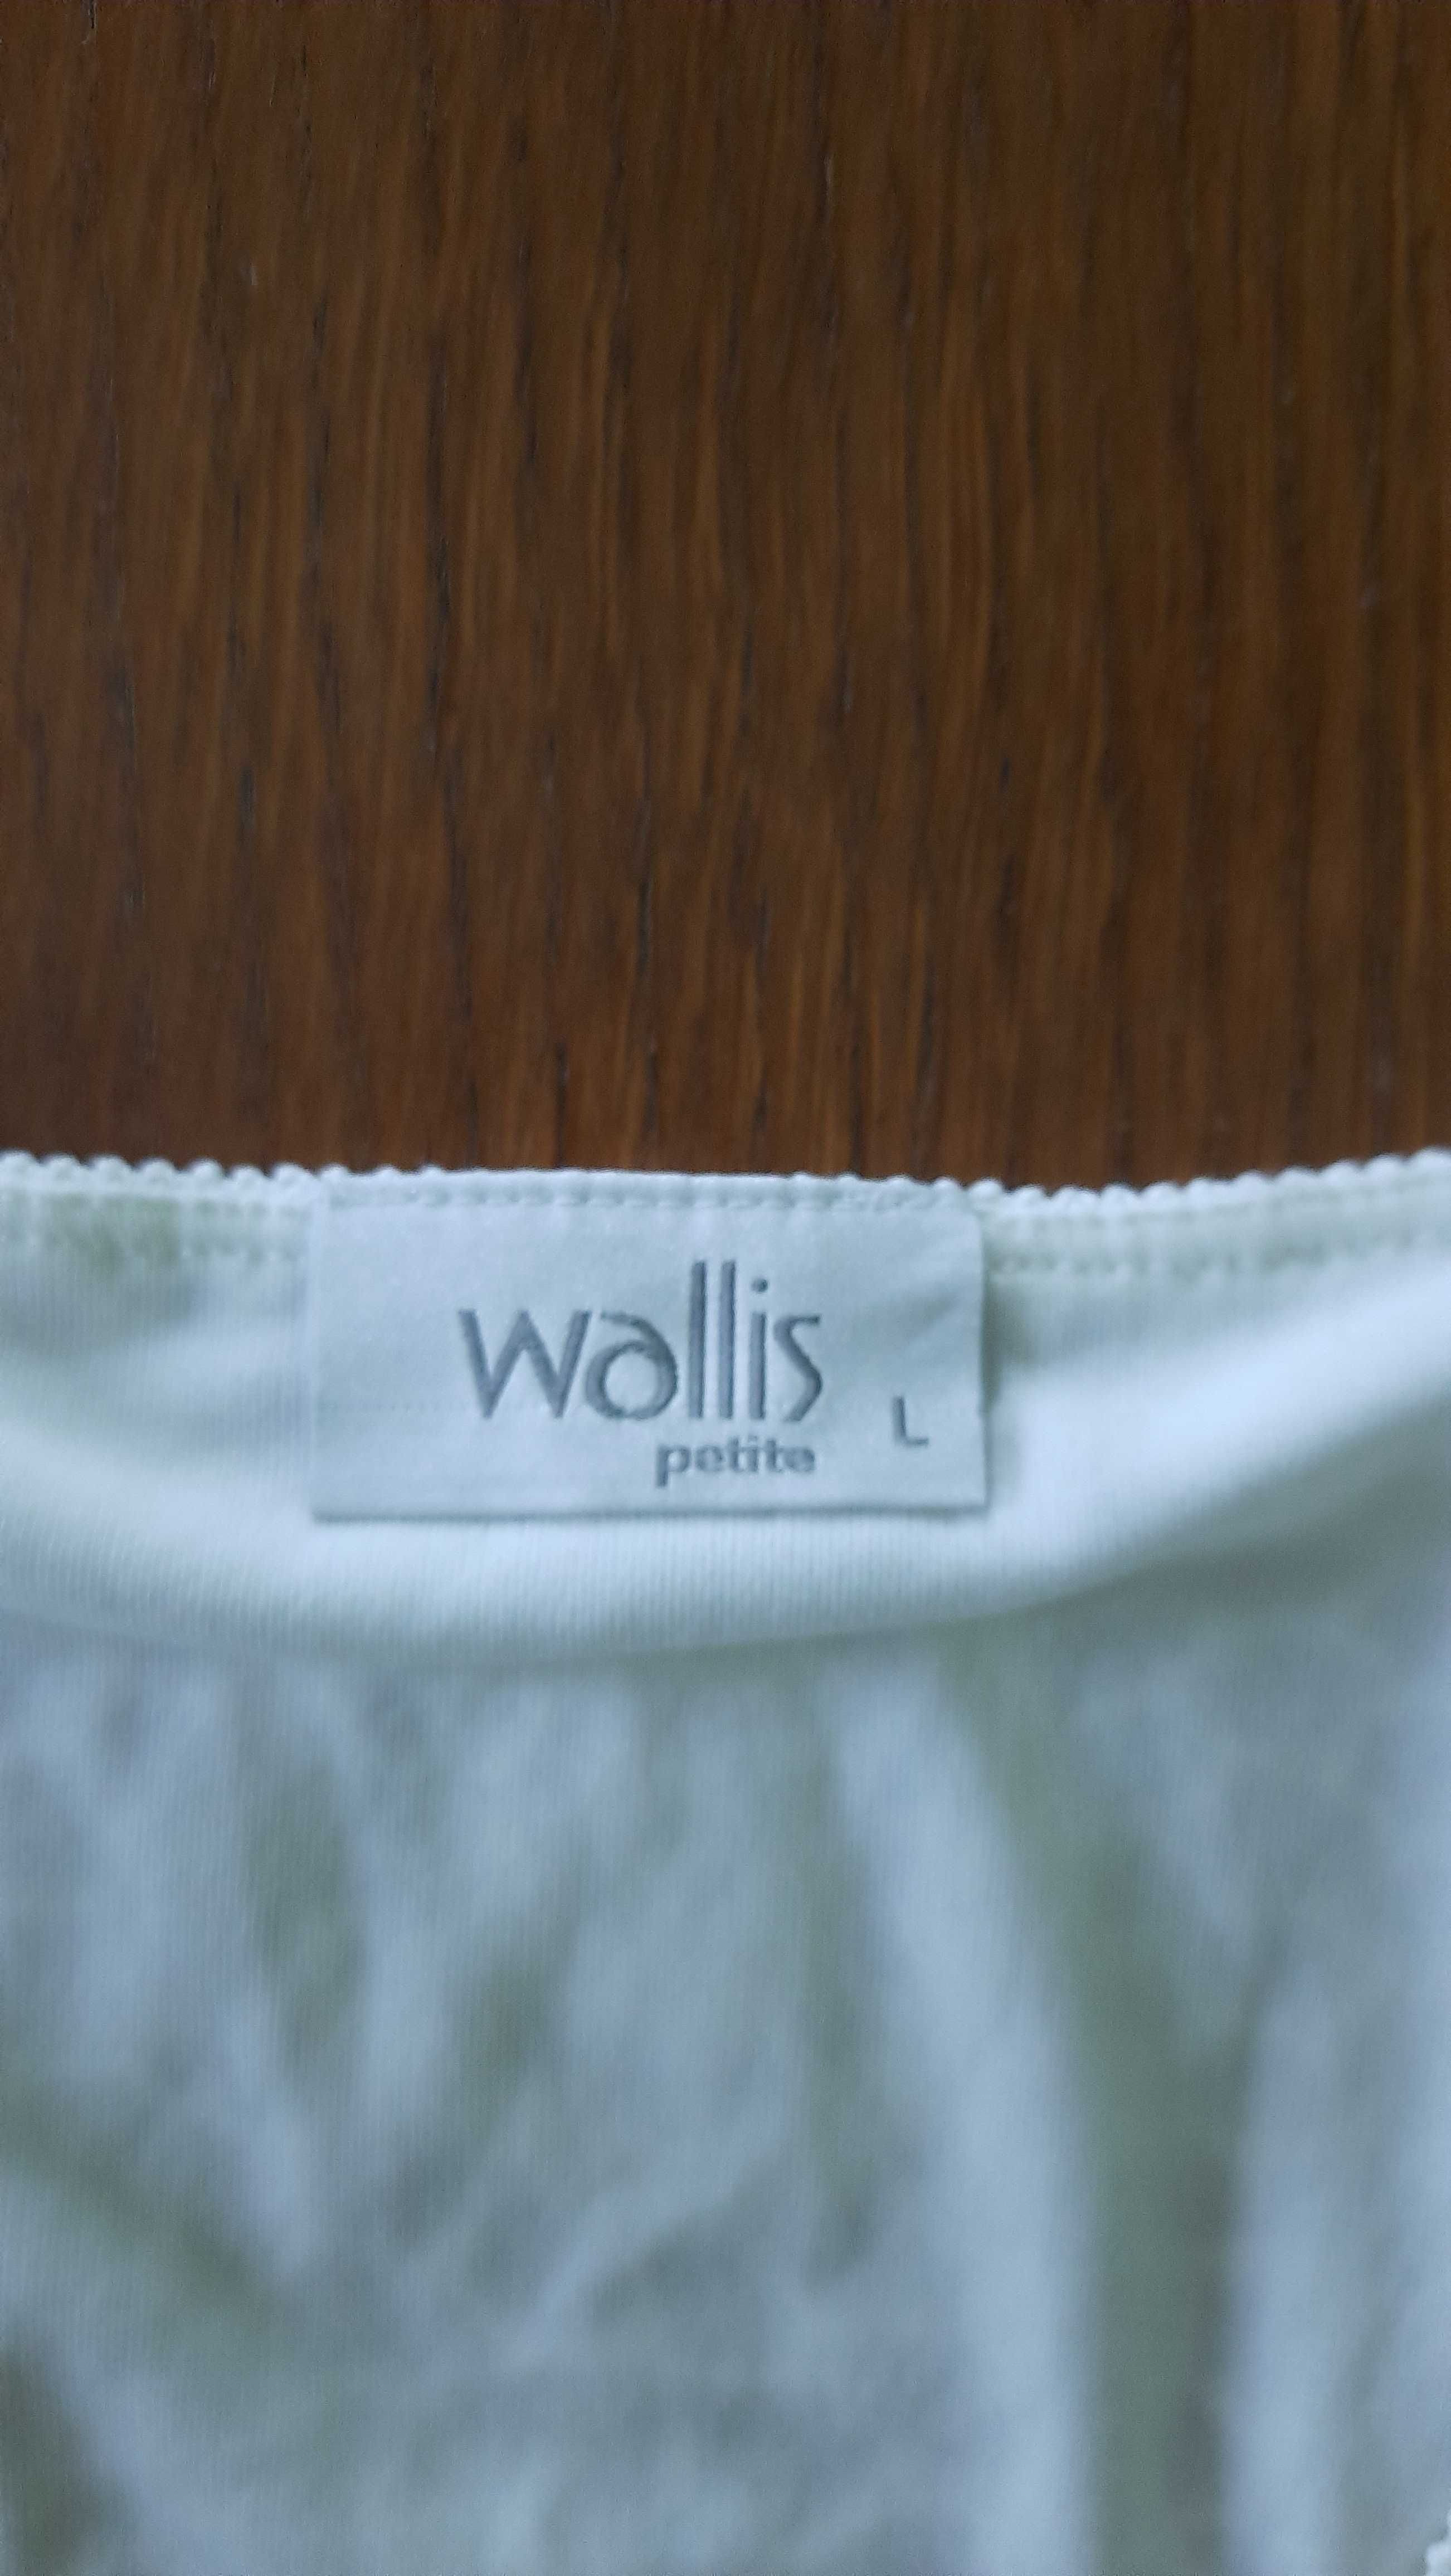 Ładna bluzka na lato lub pod żakiet, firma Wallis, rozm L